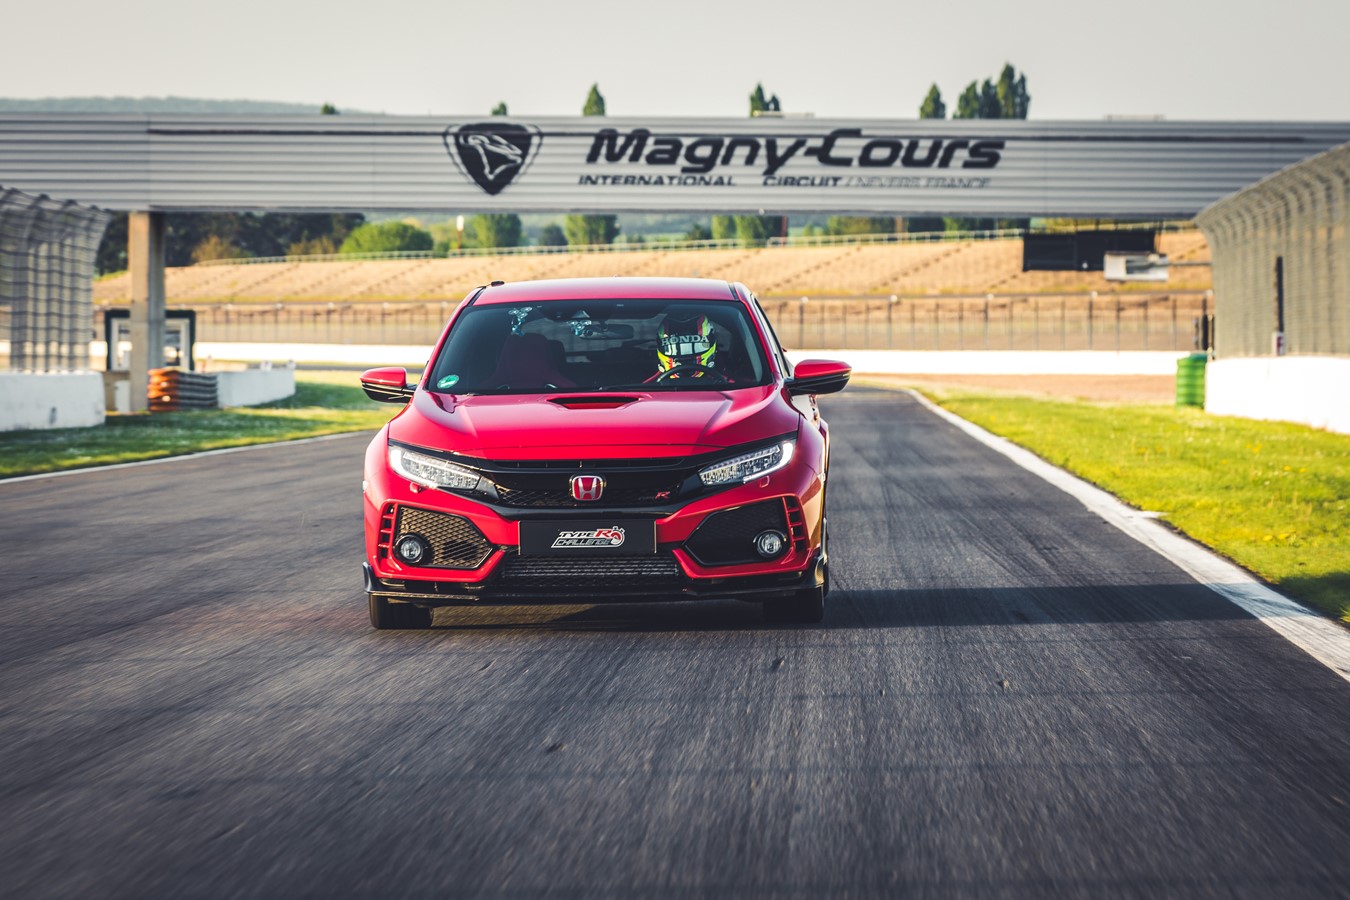  ”Type R Challenge 2018” är igång! Honda sätter nytt varvrekord med Civic Type R på GP-banan Magny-Cours